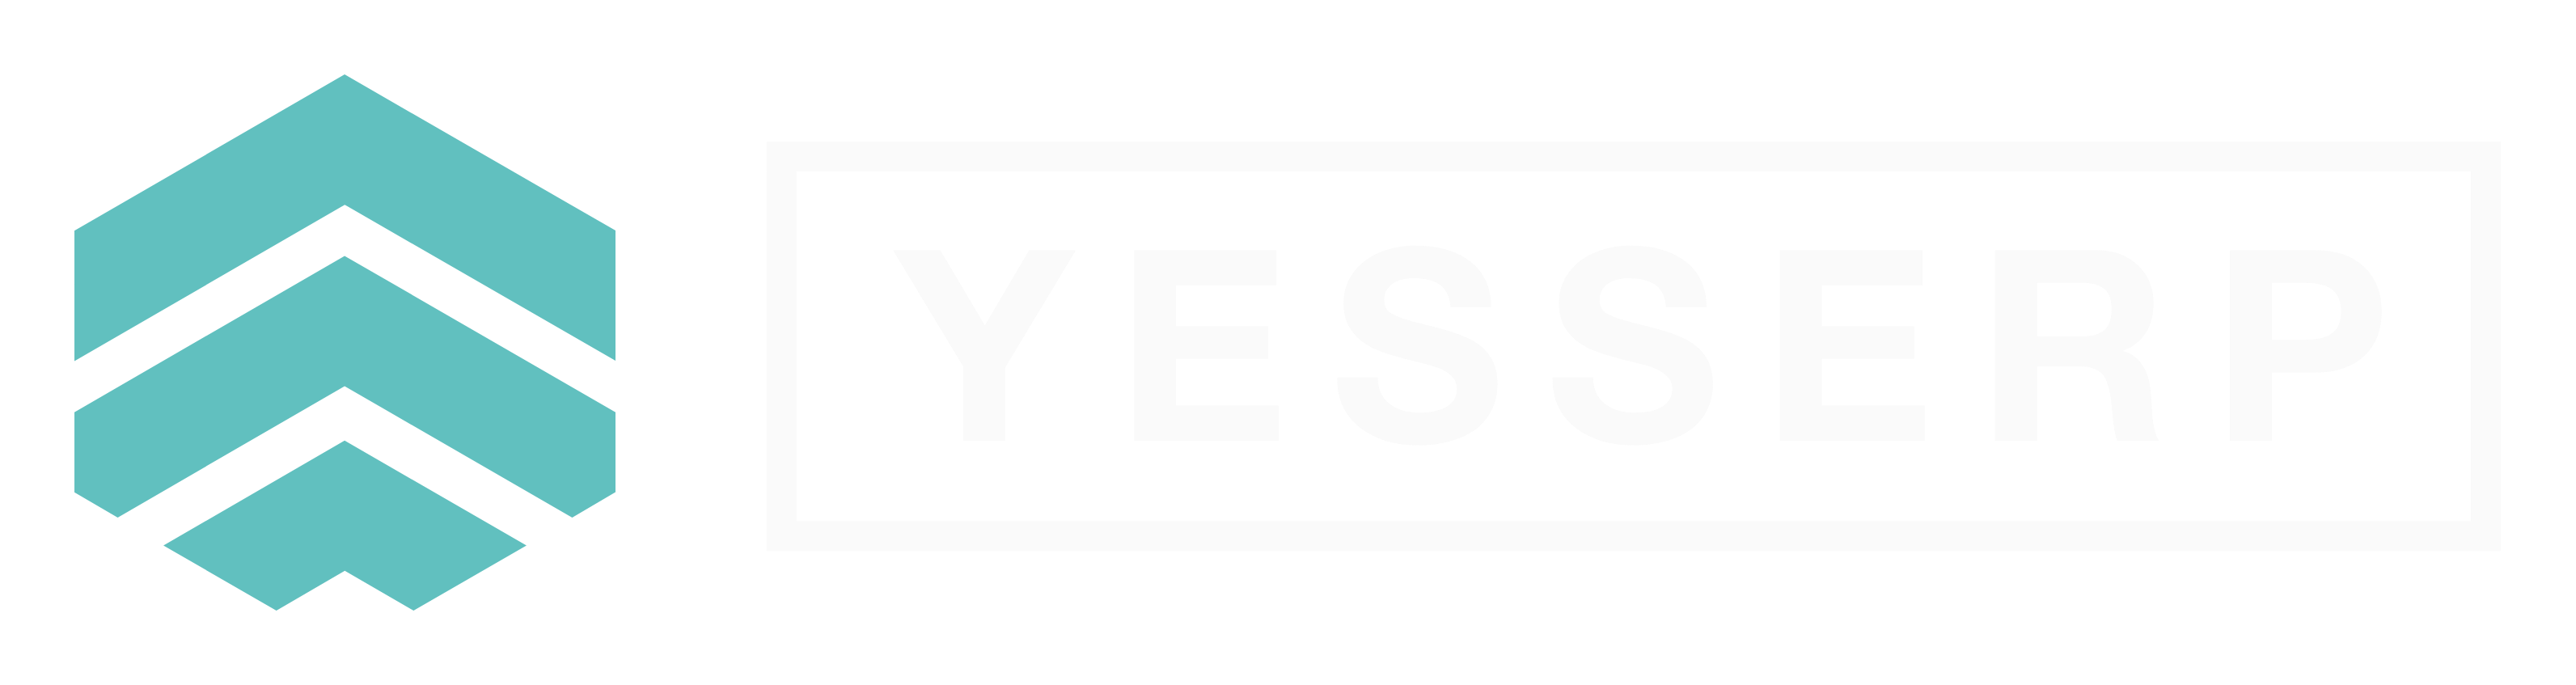 yesserp logo